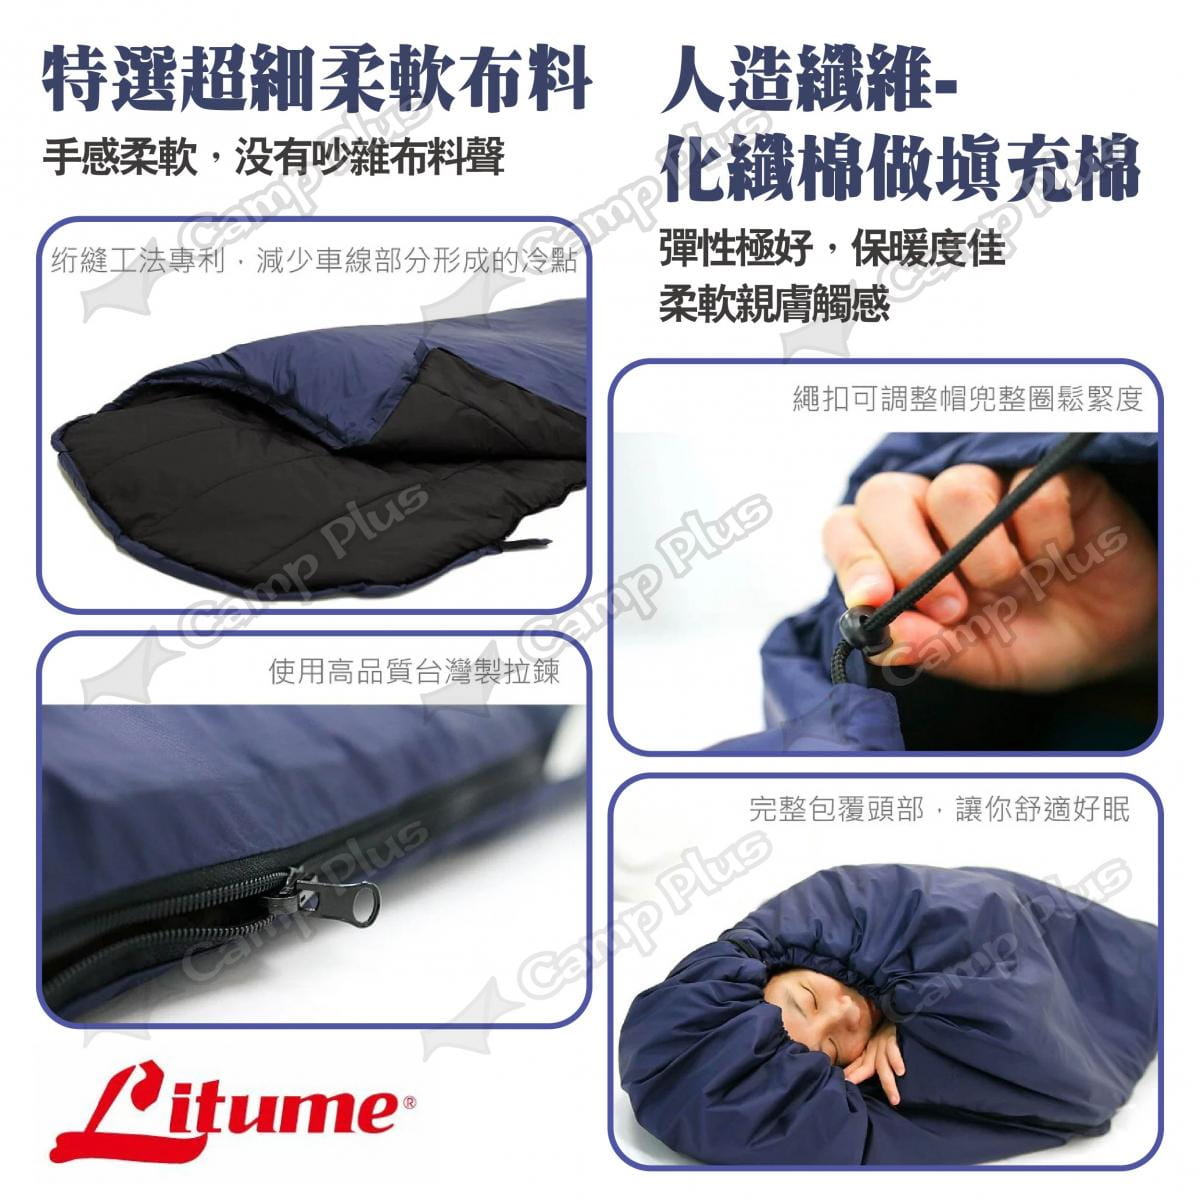 【LITUME】意都美 舒眠保暖睡袋 C055 深藍/深灰 悠遊戶外 3